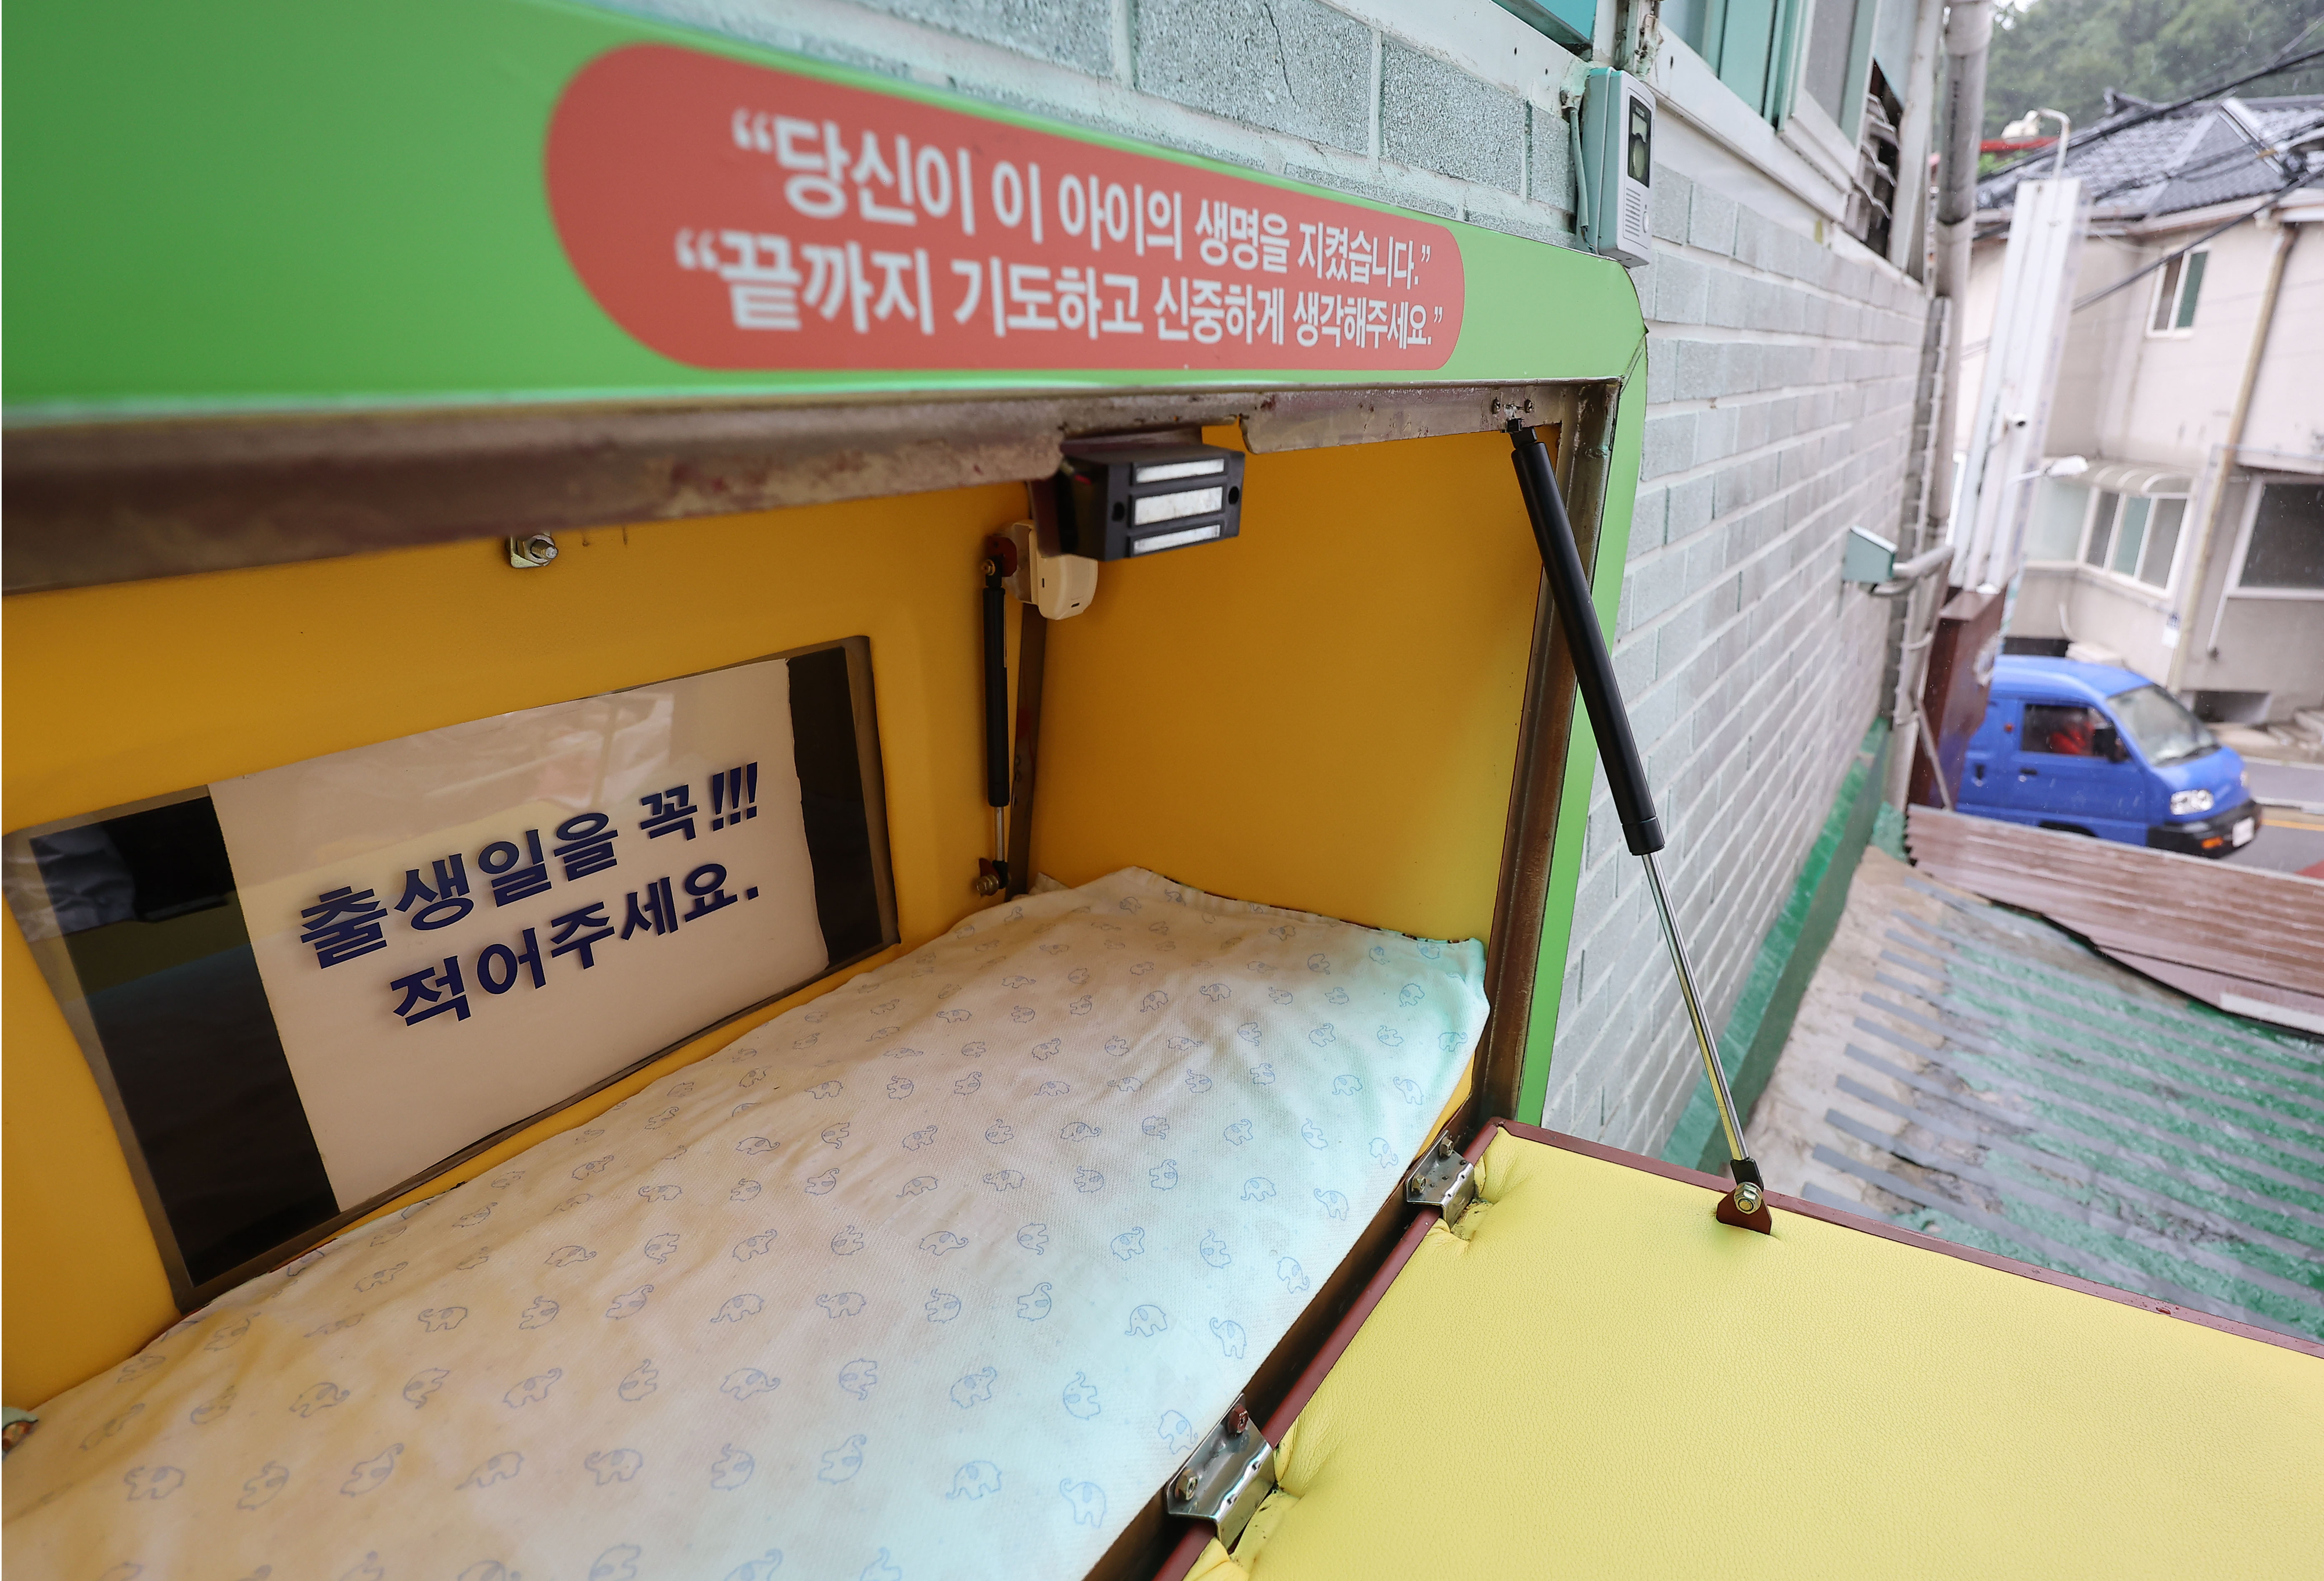 아이를 키울 수 없는 절박한 상황에 처한 부모들이 최후의 보루로 찾는 베이비박스. 연합뉴스